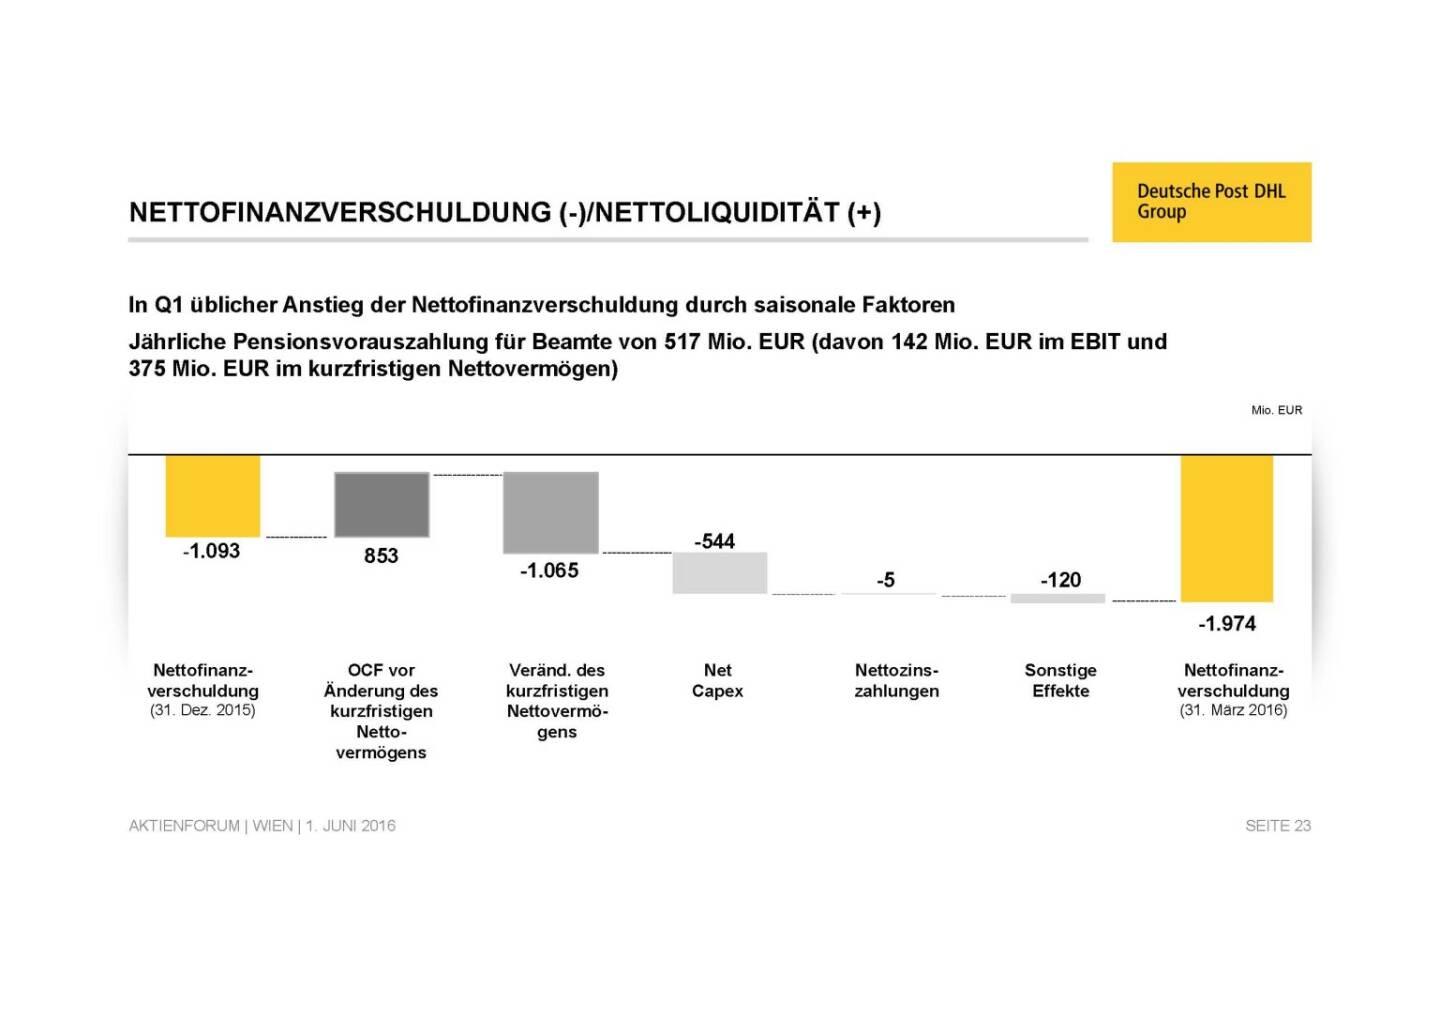 Deutsche Post - Nettofinanzverschuldung